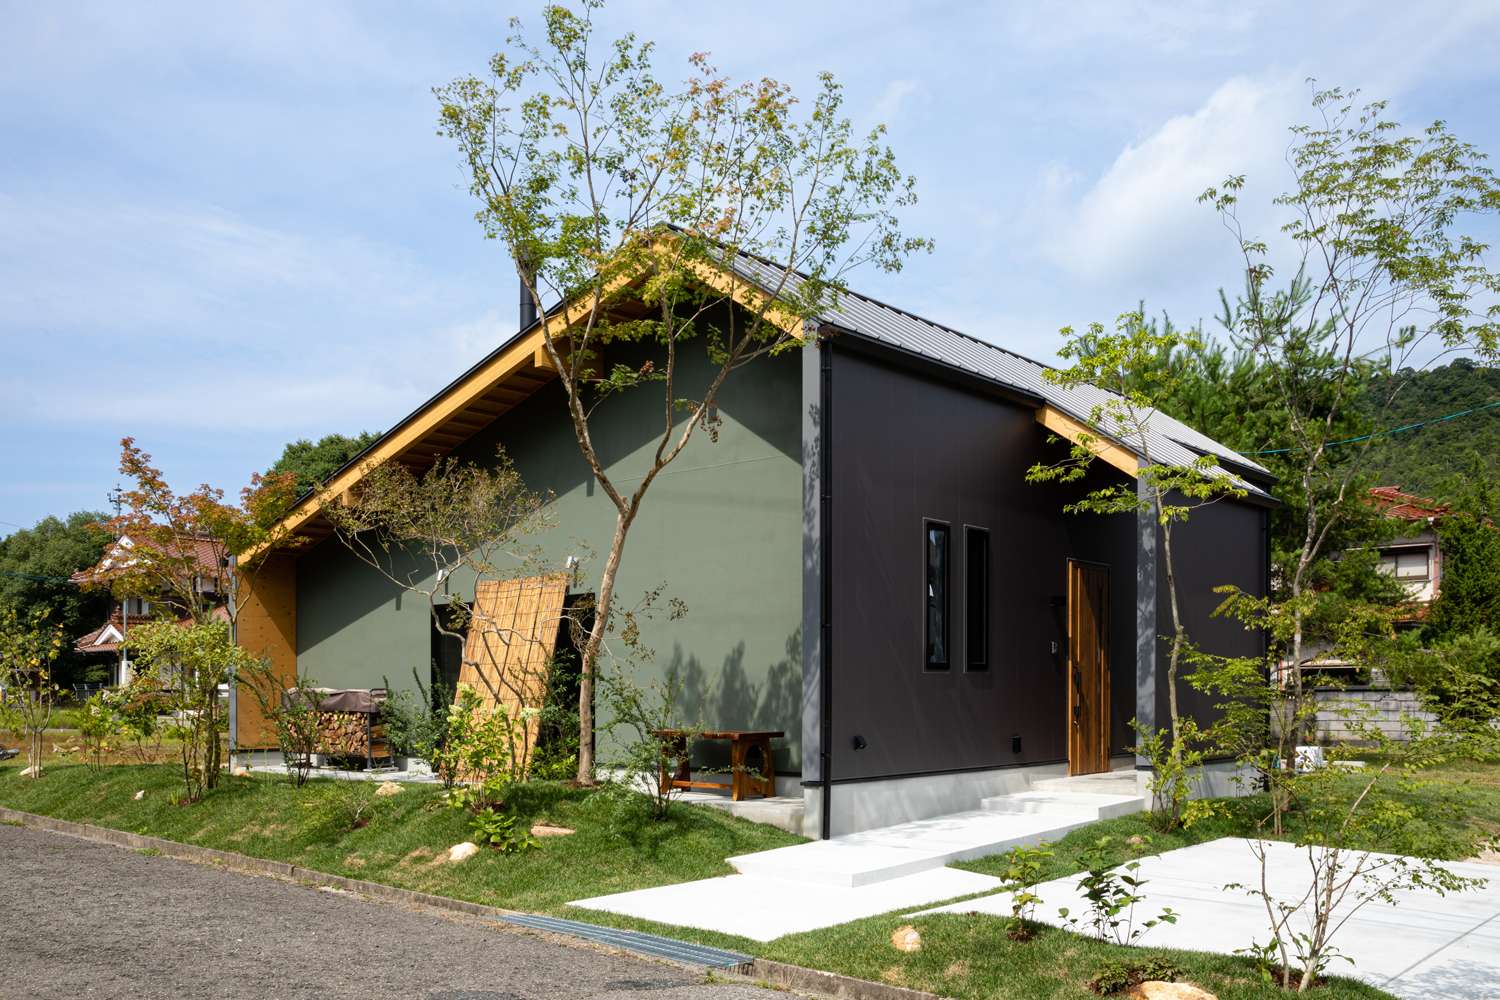 広島市で居心地の良い注文住宅の設計は設計事務所asazu design office